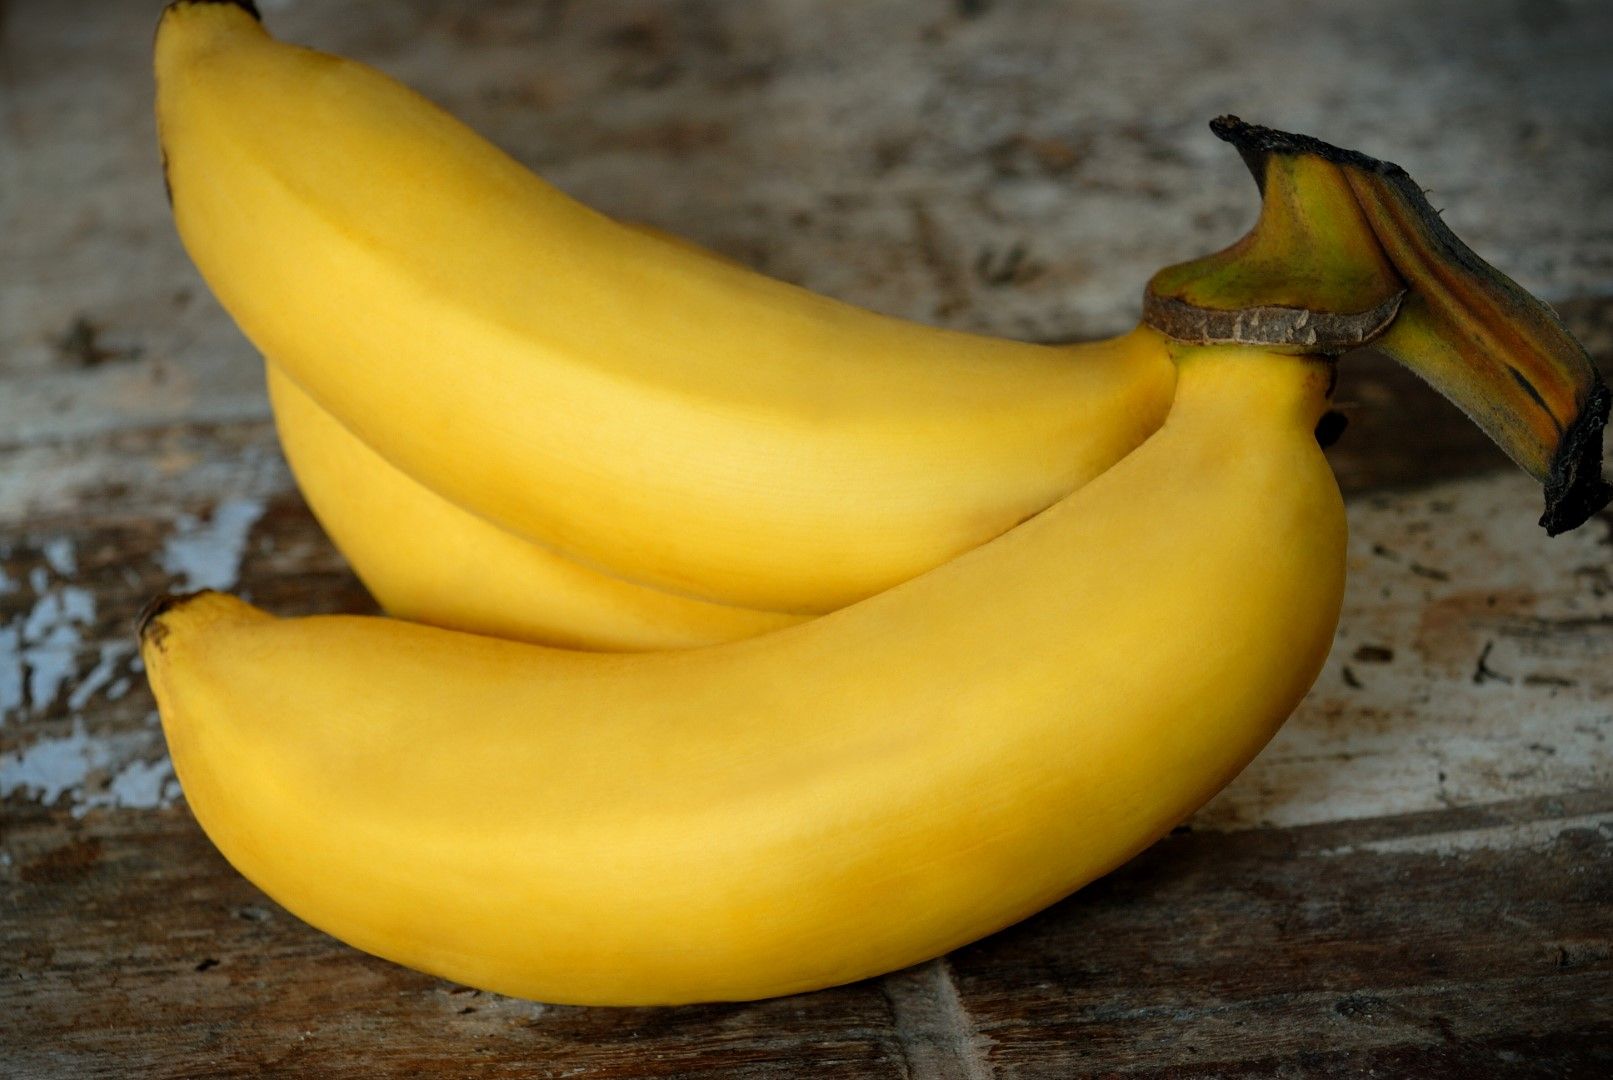 Гро Мишел -  е бил значително по-ароматен, вкусен, кремообразен и малко по-едър и дебел от сегашните най-разпространени два вида търговски банани